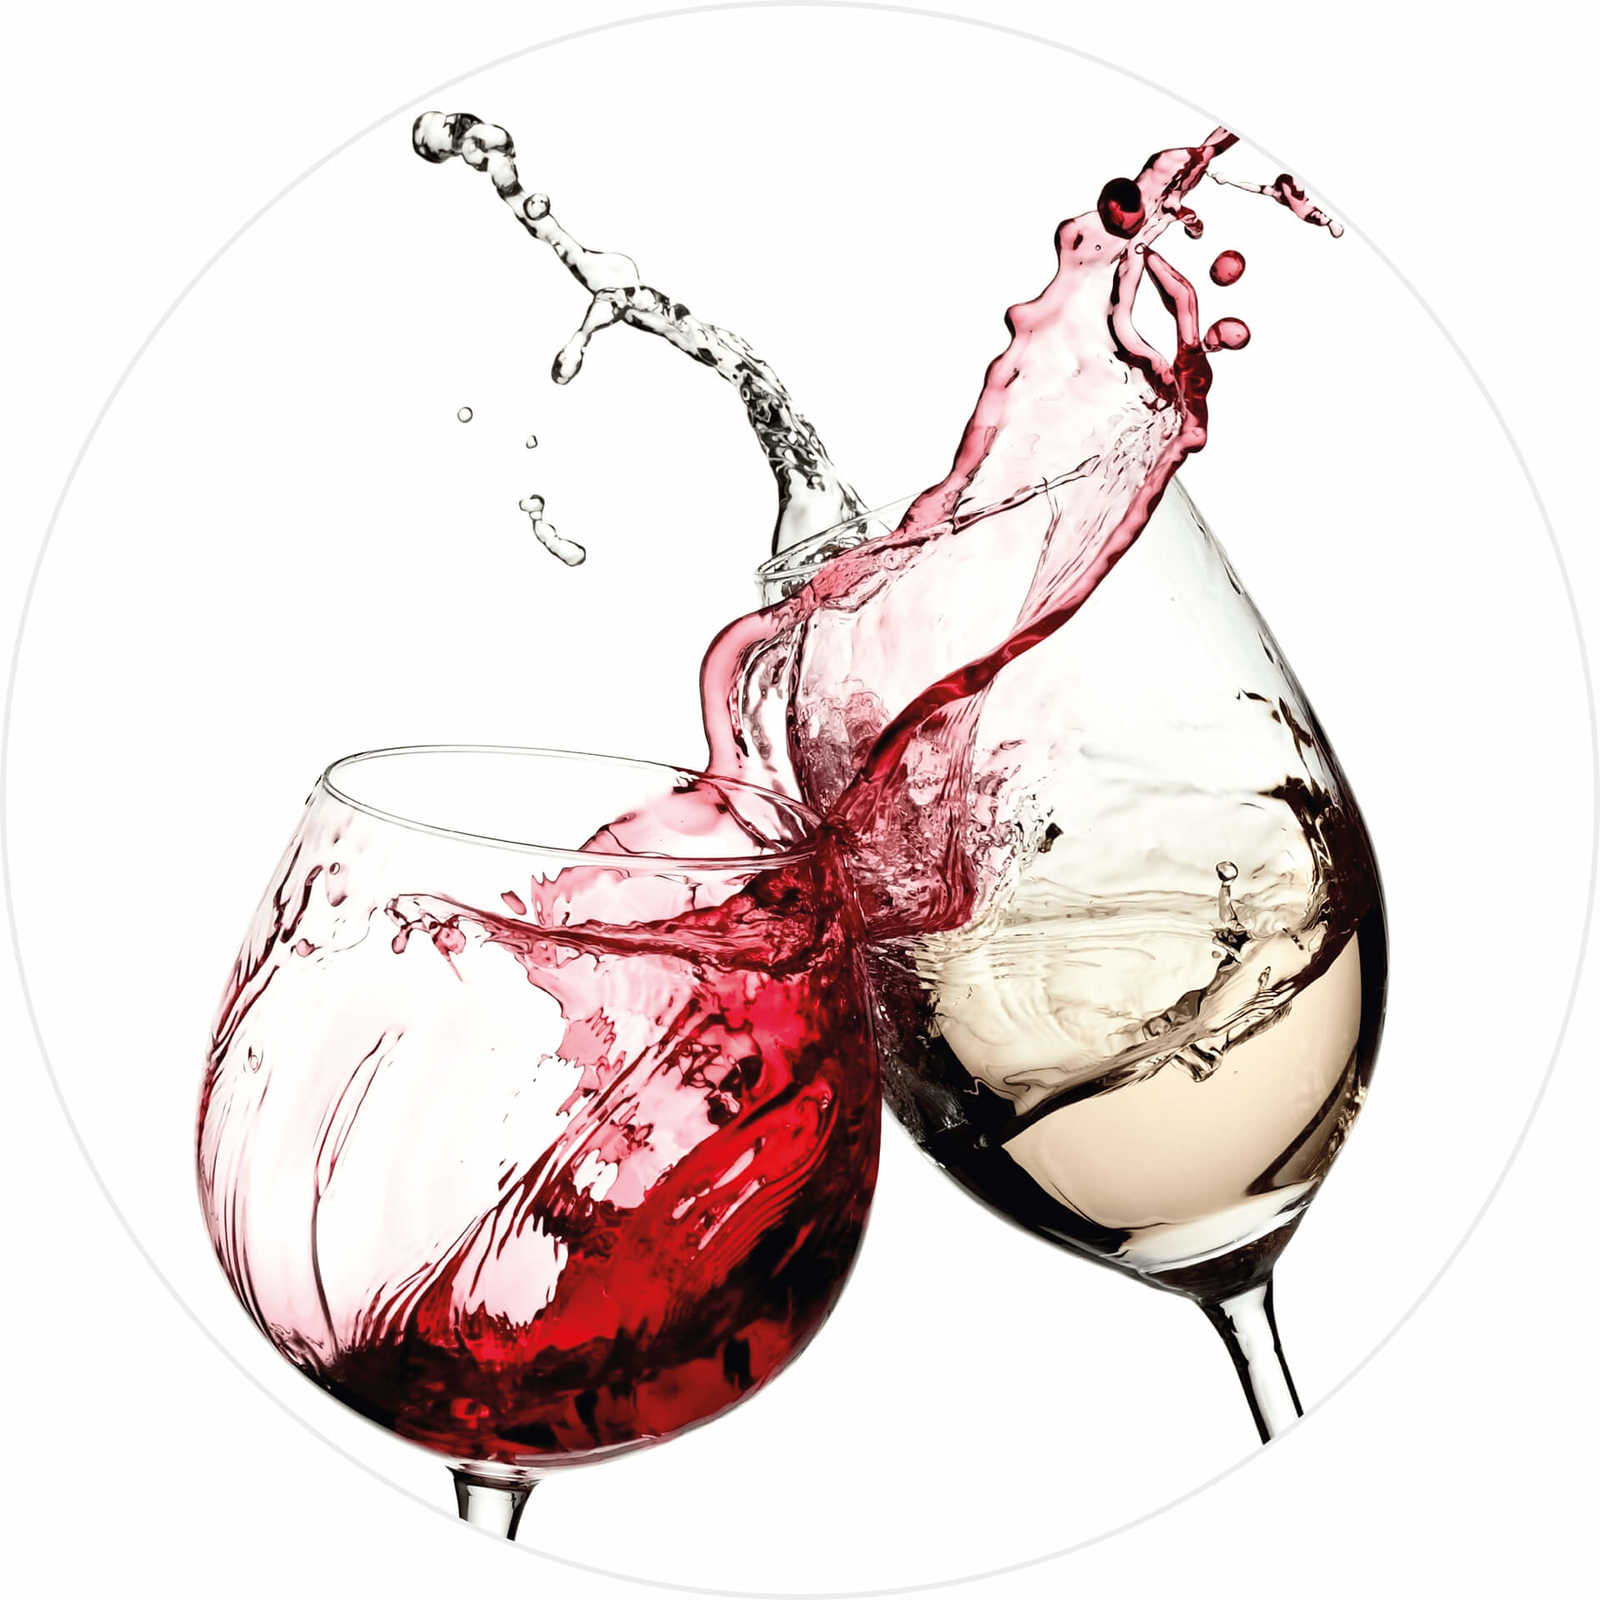         Küchen Fototapete Getränke im Glas, Wein Rot & Weiß
    